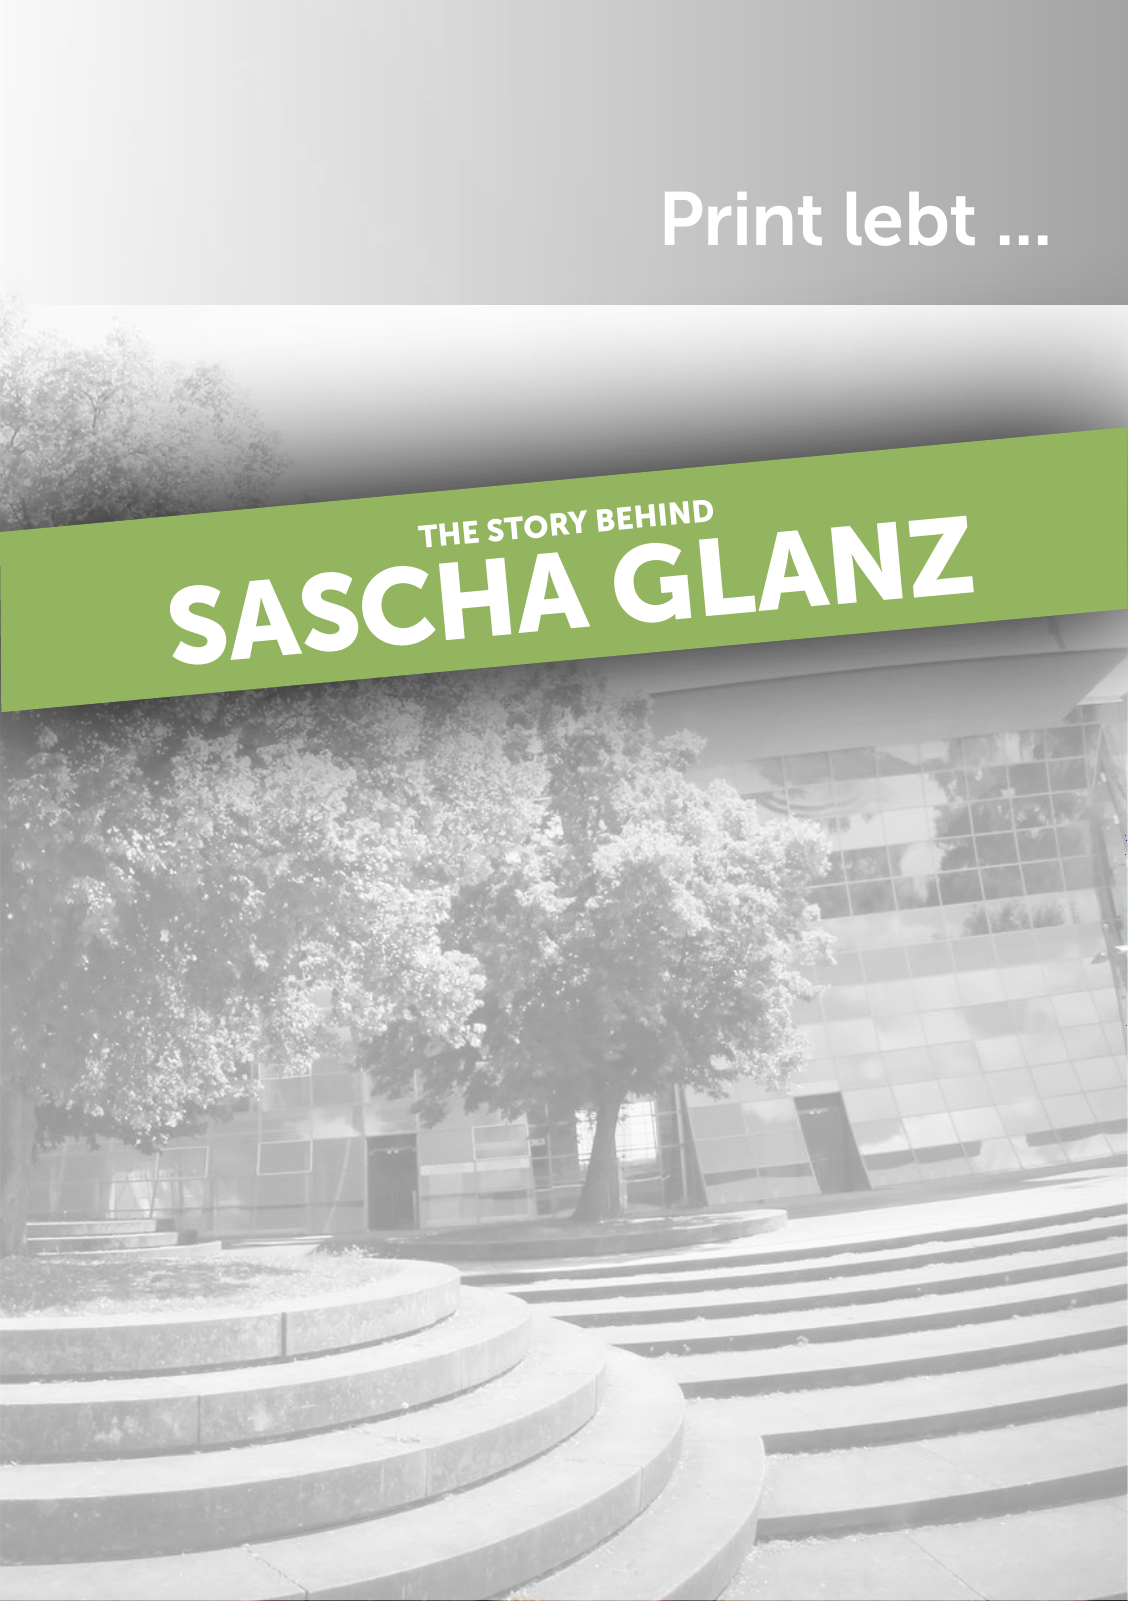 Vorschau Post für Sascha Glanz Seite 1